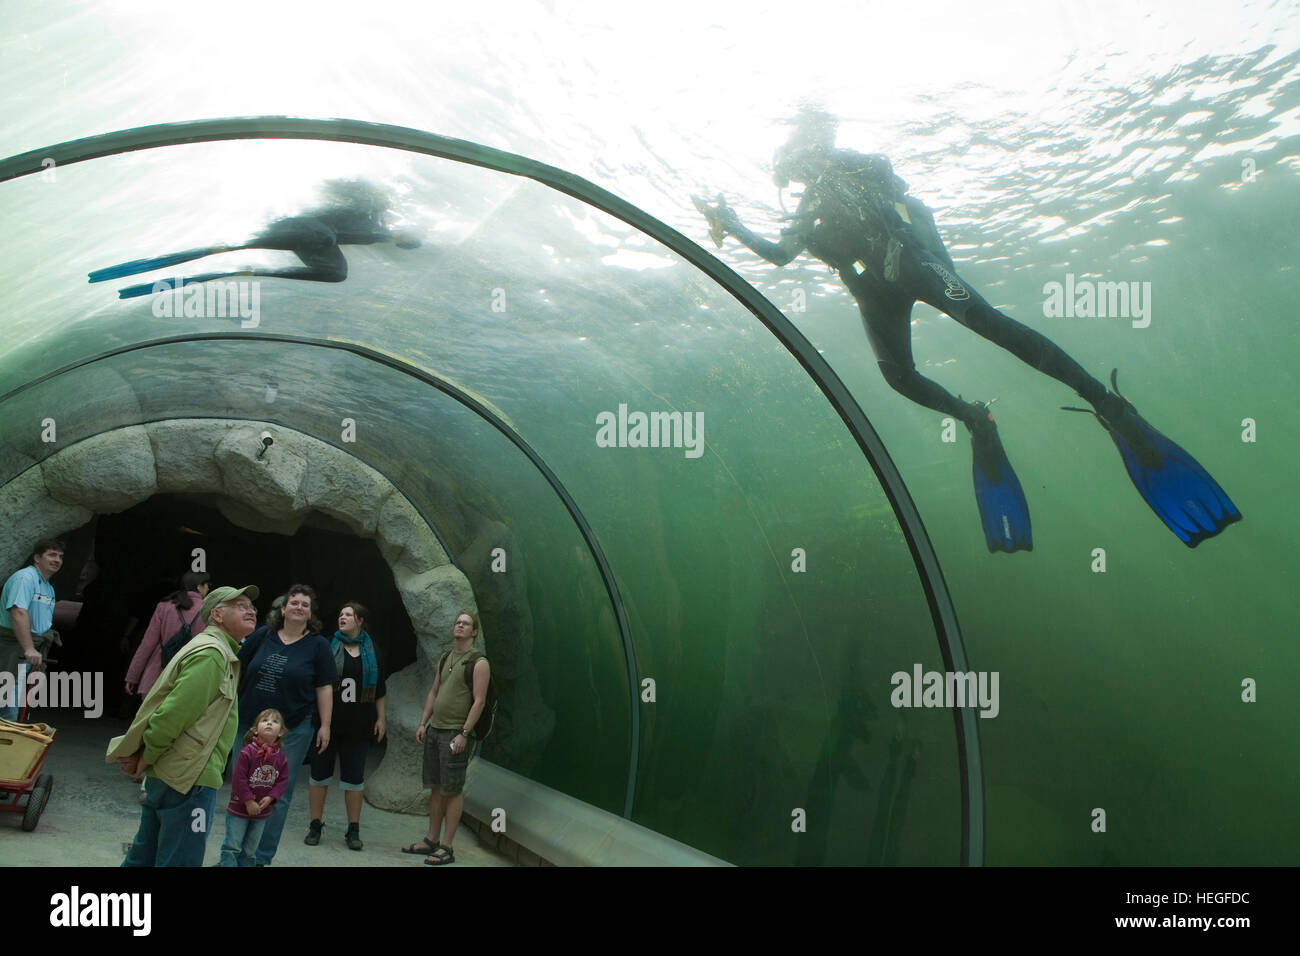 DEU, la Germania, la zona della Ruhr, Gelsenkirchen, lo zoo, tunnel sottomarino nel bacino di tenuta, frogman pulisce il vetro. Foto Stock